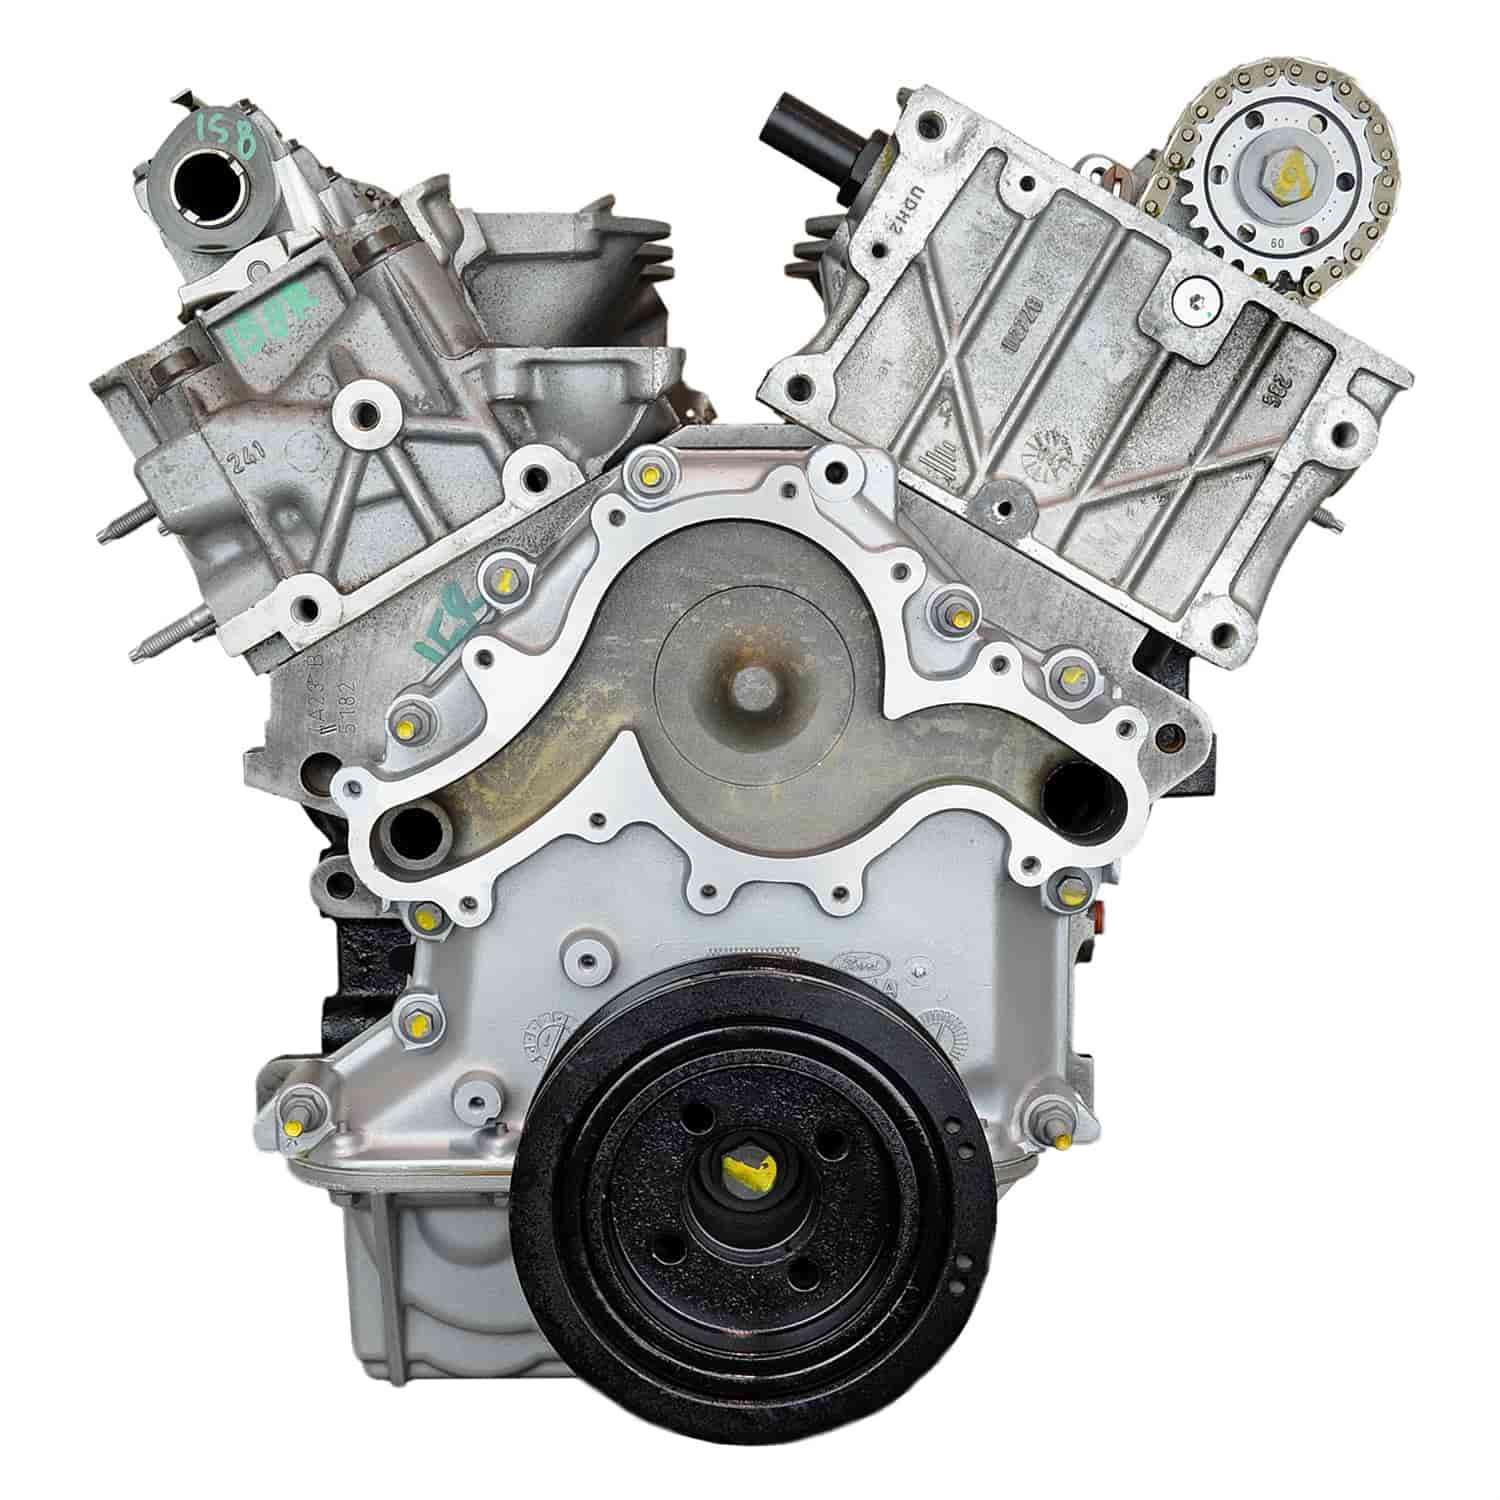 Recenzija Ford 4.0L V6 motora - prednosti i mane